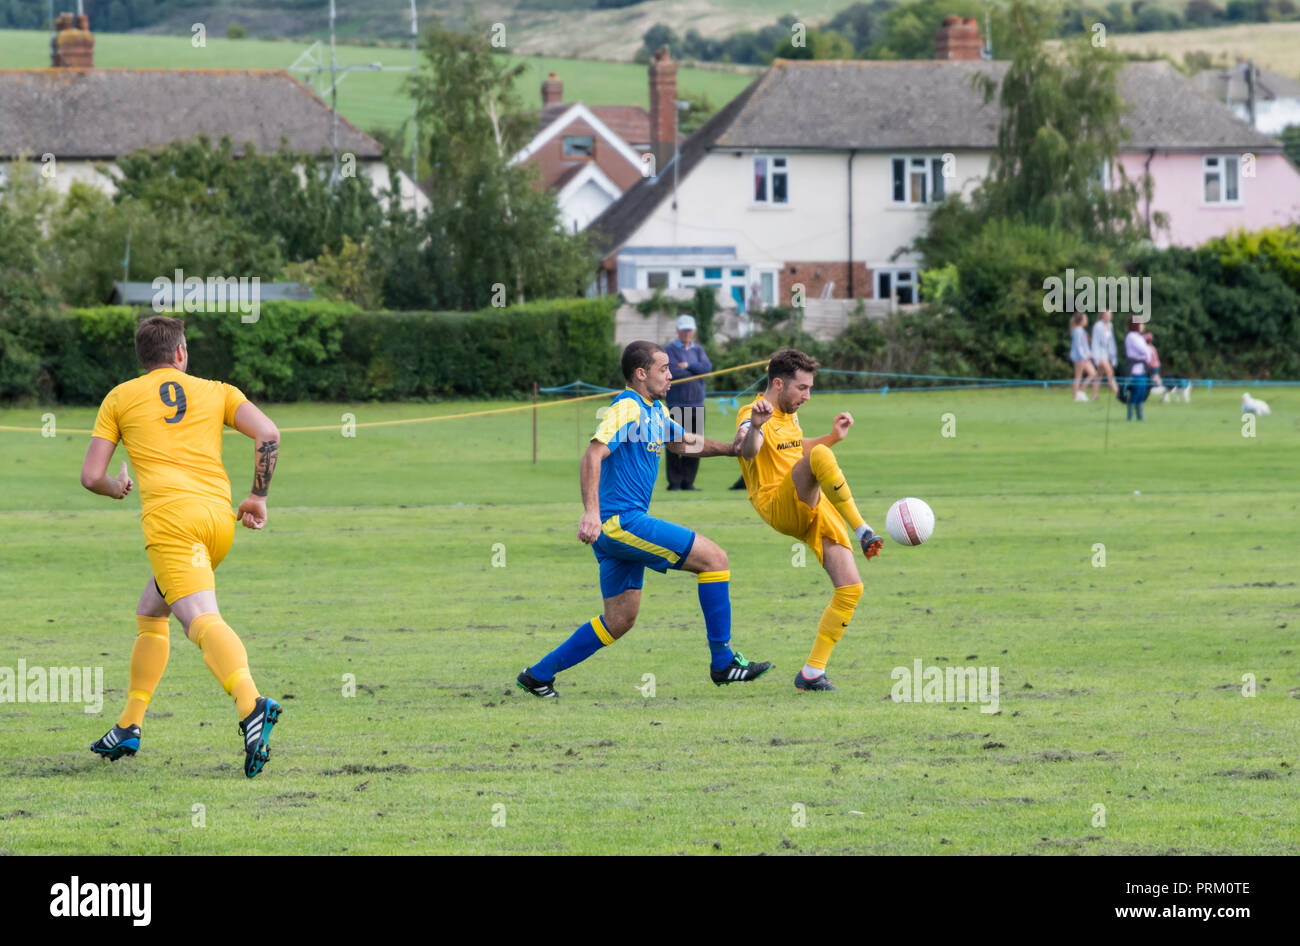 Les joueurs botter un ballon lors d'un match de football de ligue samedi avec des équipes d'amateurs locaux dans le West Sussex, Angleterre, Royaume-Uni. Banque D'Images